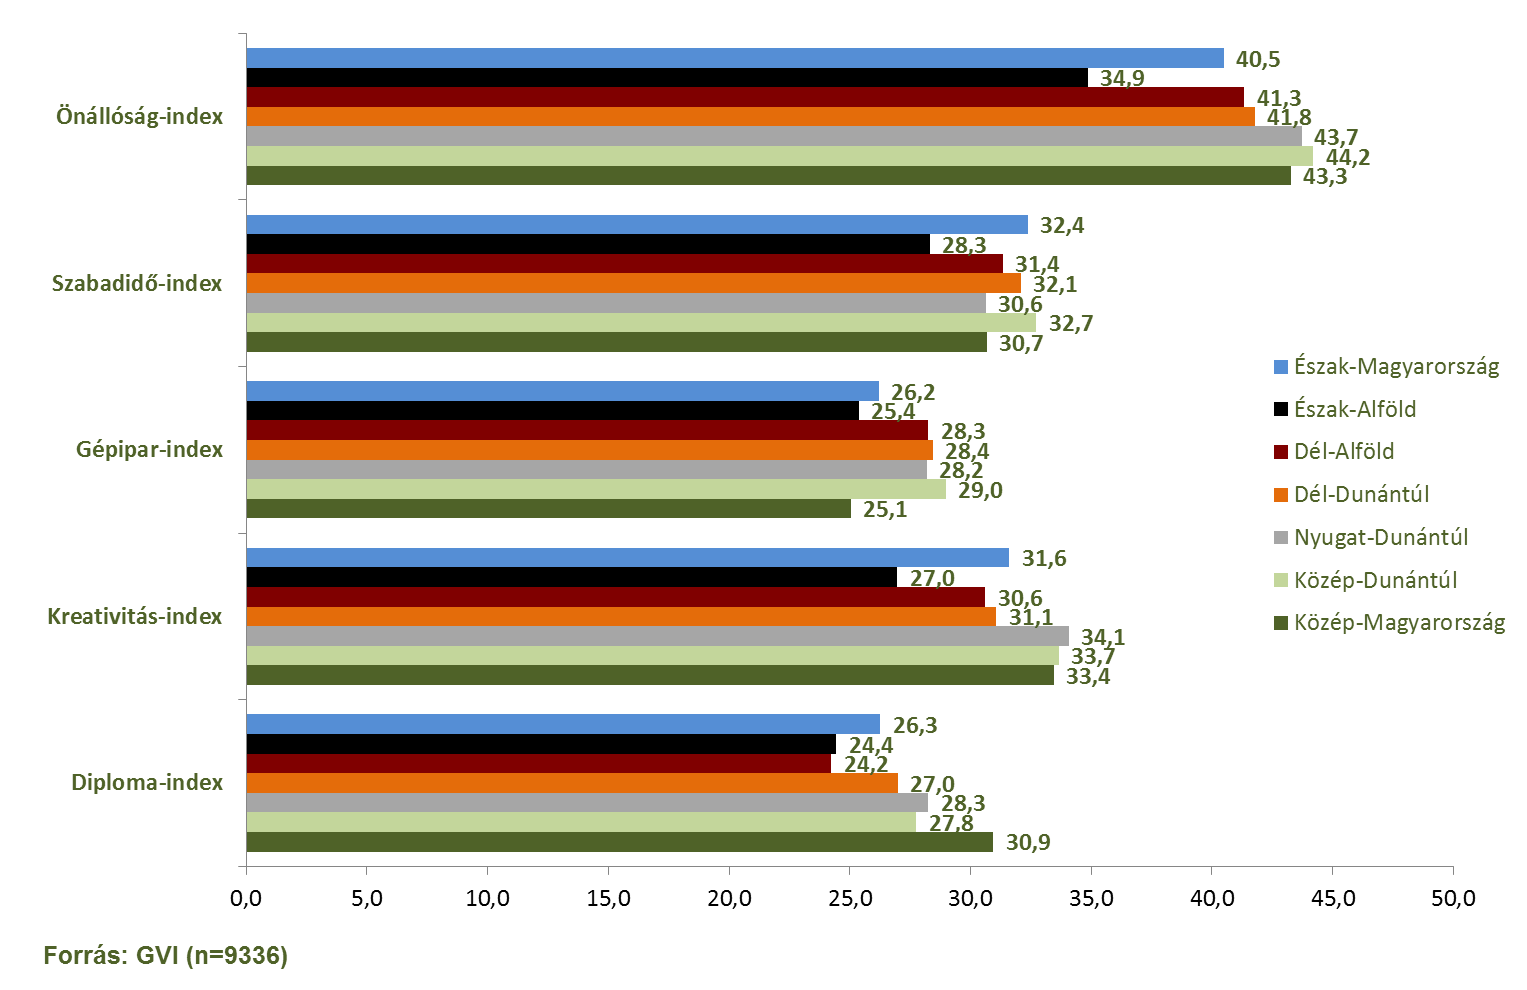 146/195 Általános iskolások pályaválasztása 2014. között a legalacsonyabb. A Diploma-index értéke Közép-Magyarországon a legmagasabb (30,9) és a Dél-Alföldön a legalacsonyabb (24,2) (lásd a 3.3. ábrát).